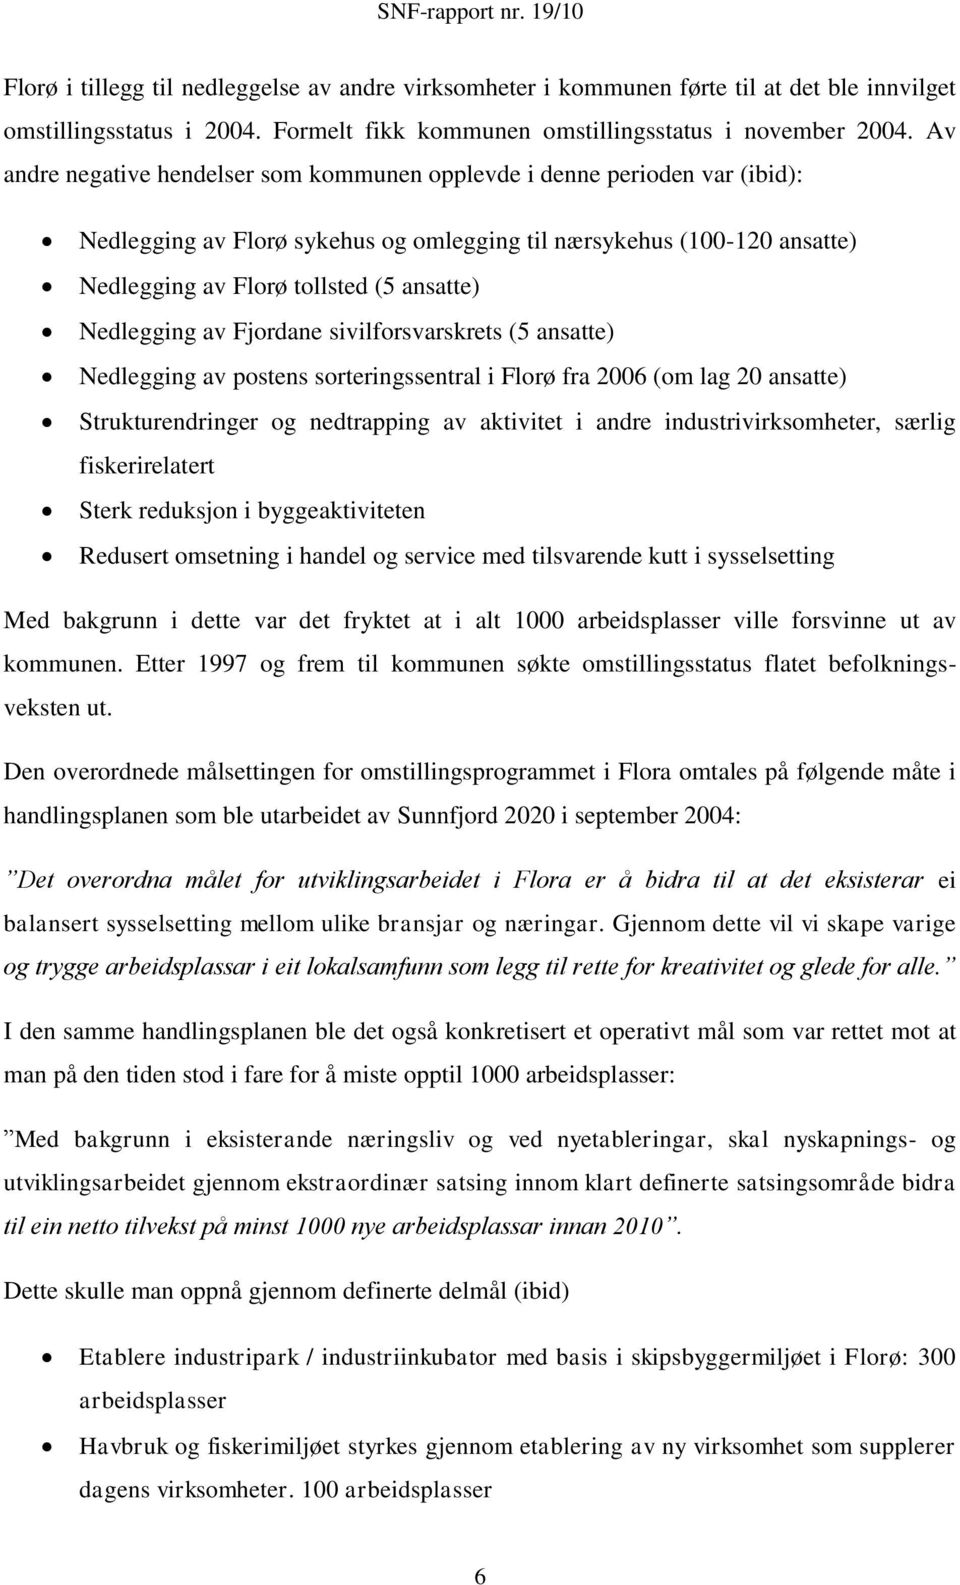 Nedlegging av Fjordane sivilforsvarskrets (5 ansatte) Nedlegging av postens sorteringssentral i Florø fra 2006 (om lag 20 ansatte) Strukturendringer og nedtrapping av aktivitet i andre